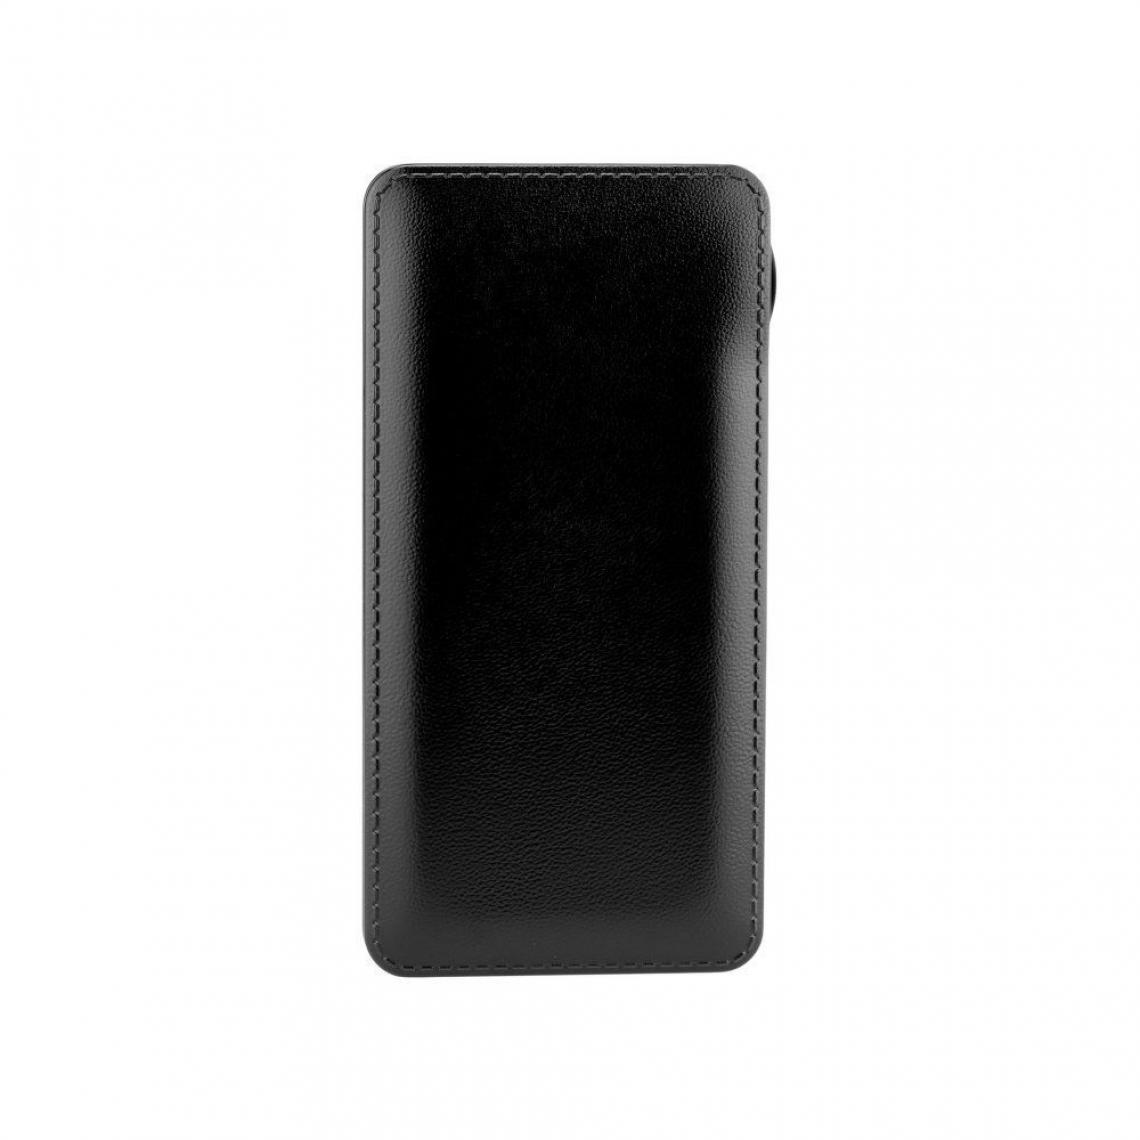 Ozzzo - Chargeur batterie externe 20000 mAh powerbank ozzzo noir pour Nokia 8110 4G - Autres accessoires smartphone